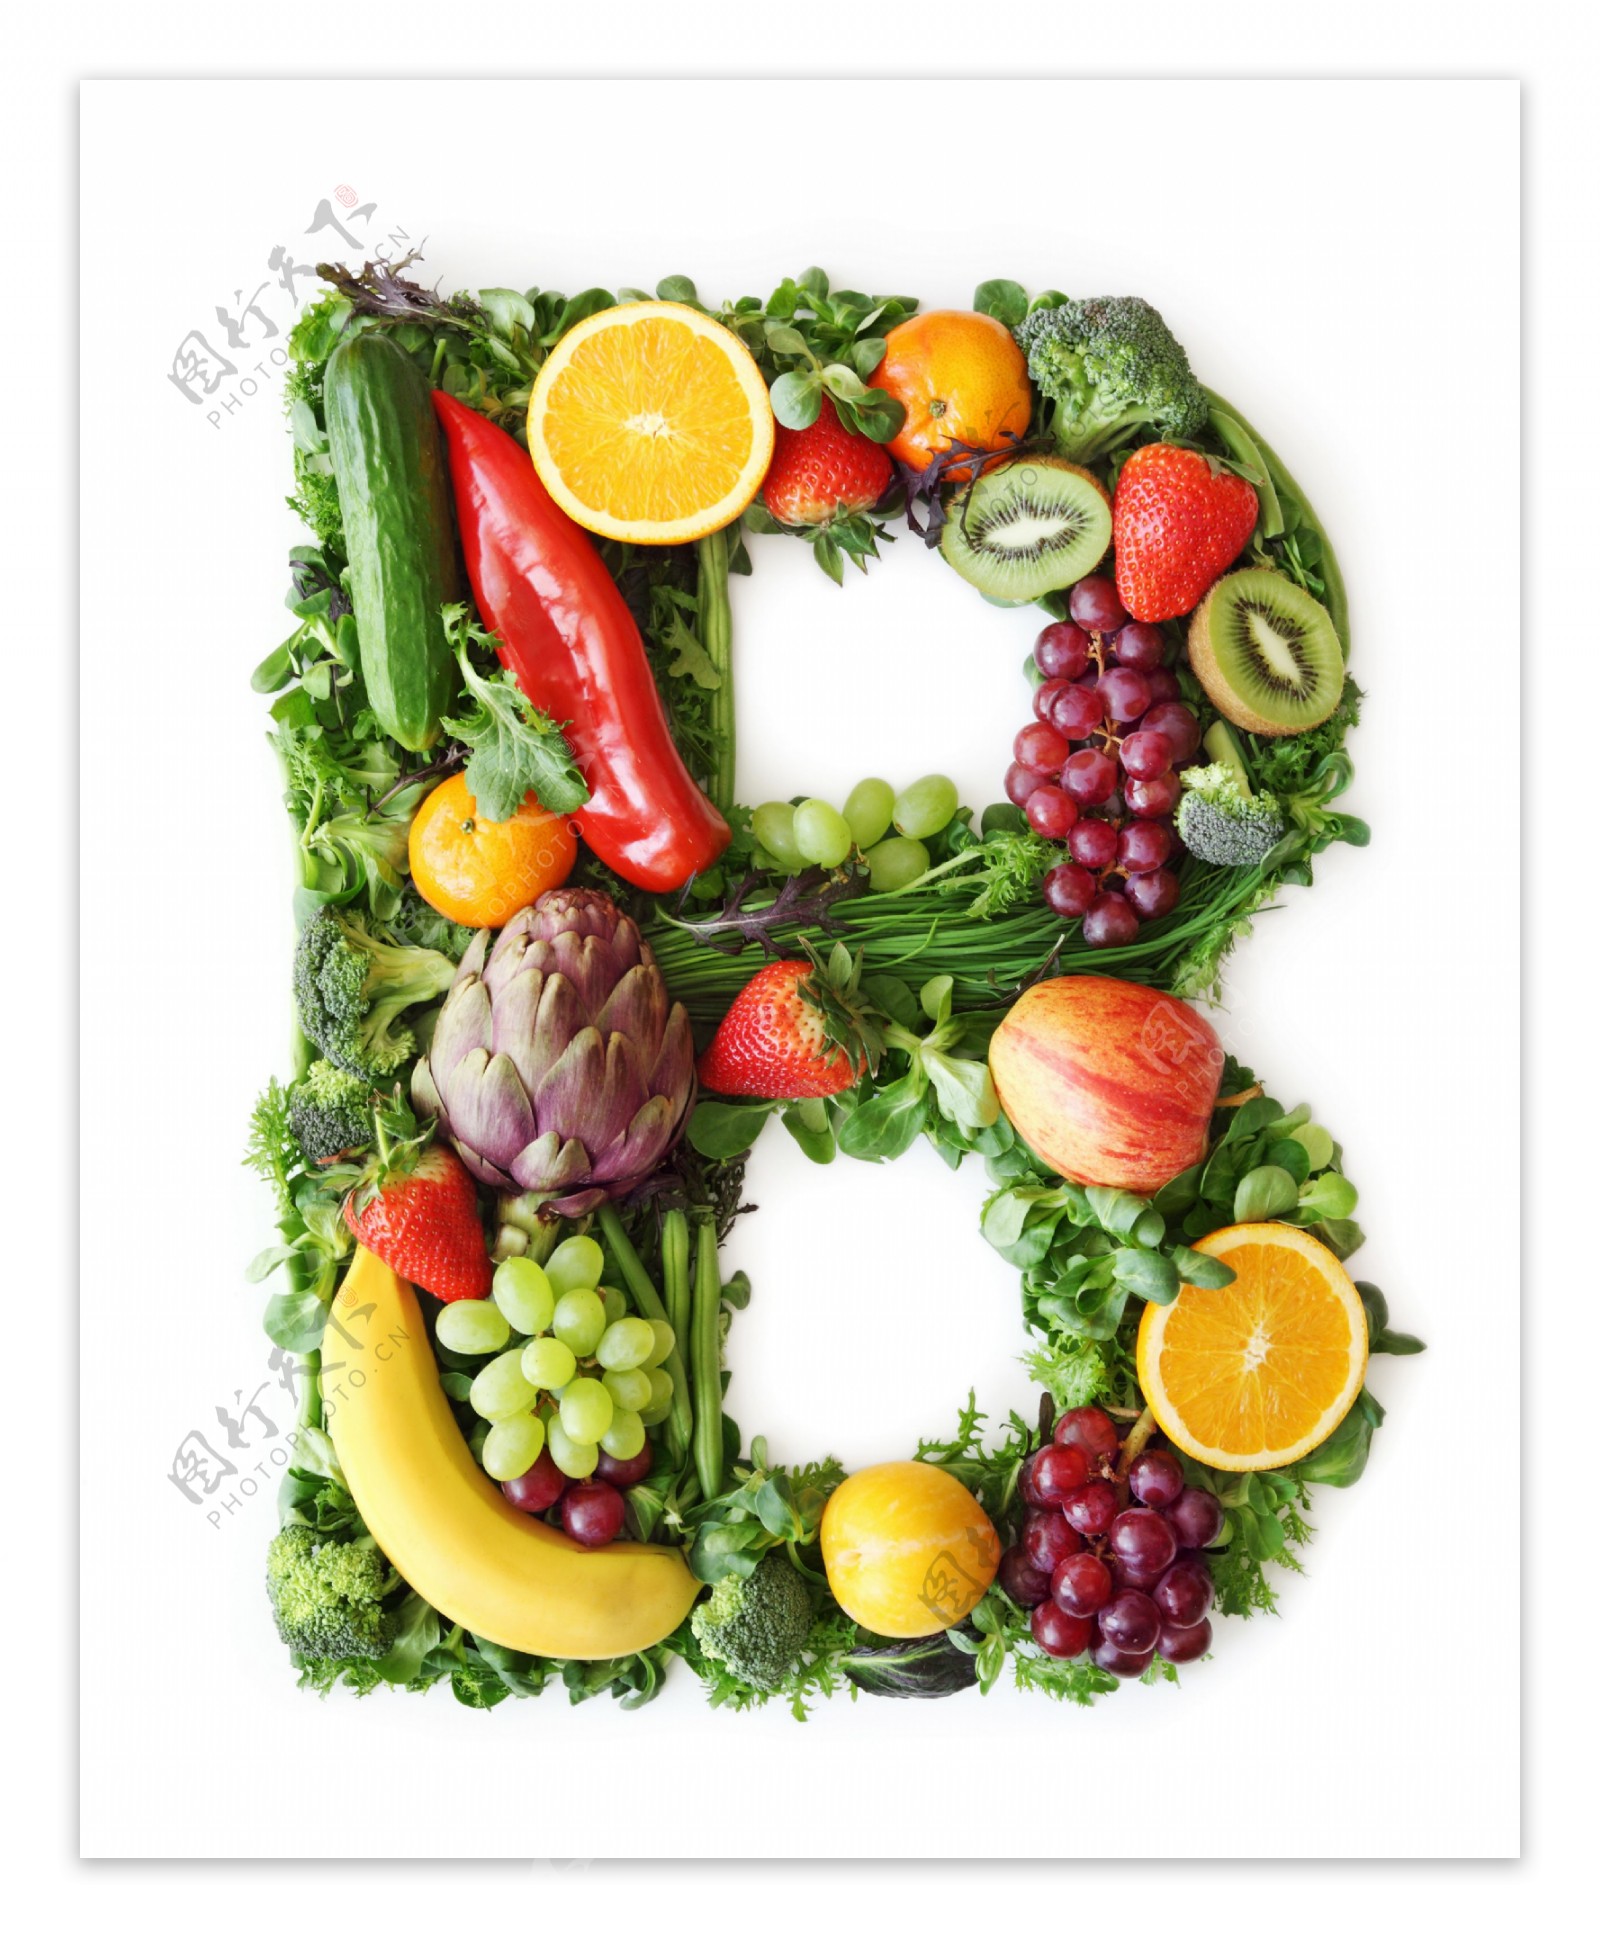 水果和蔬菜组成的字母B图片